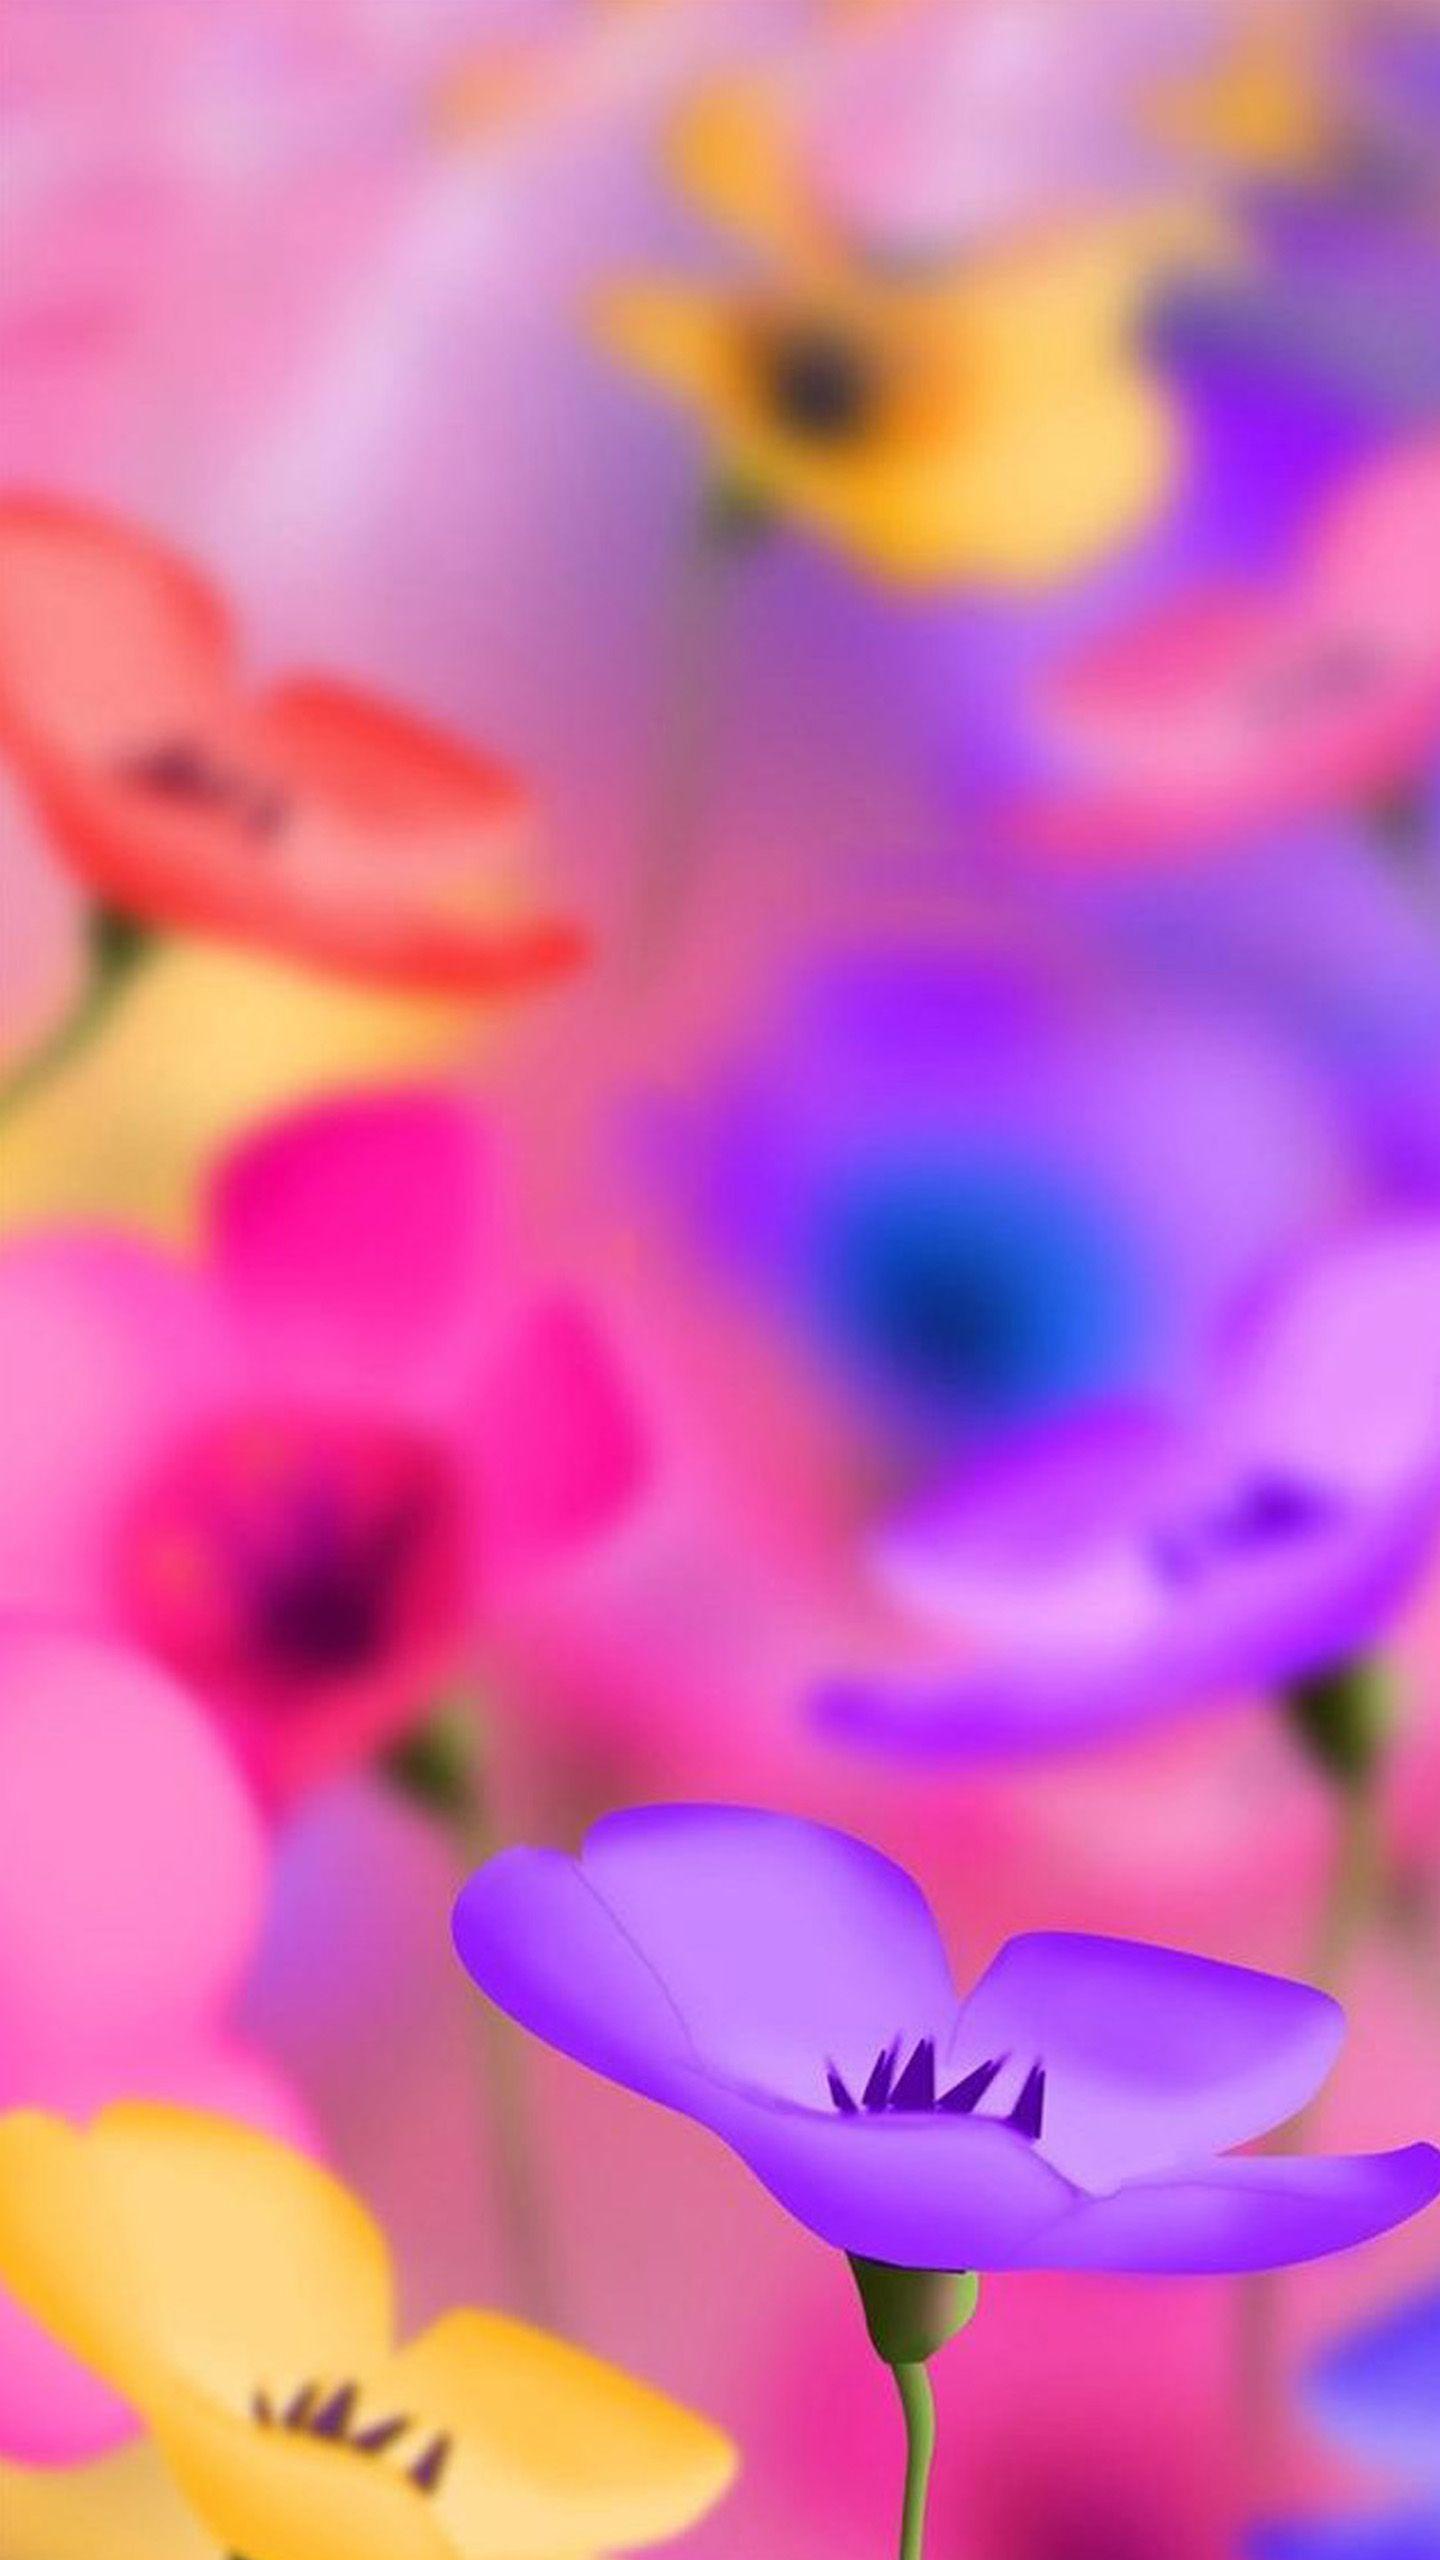 Обложка на экран телефона. Яркие цветы. Красивые яркие цветы. Красивые цветочки. Яркие цветочки.